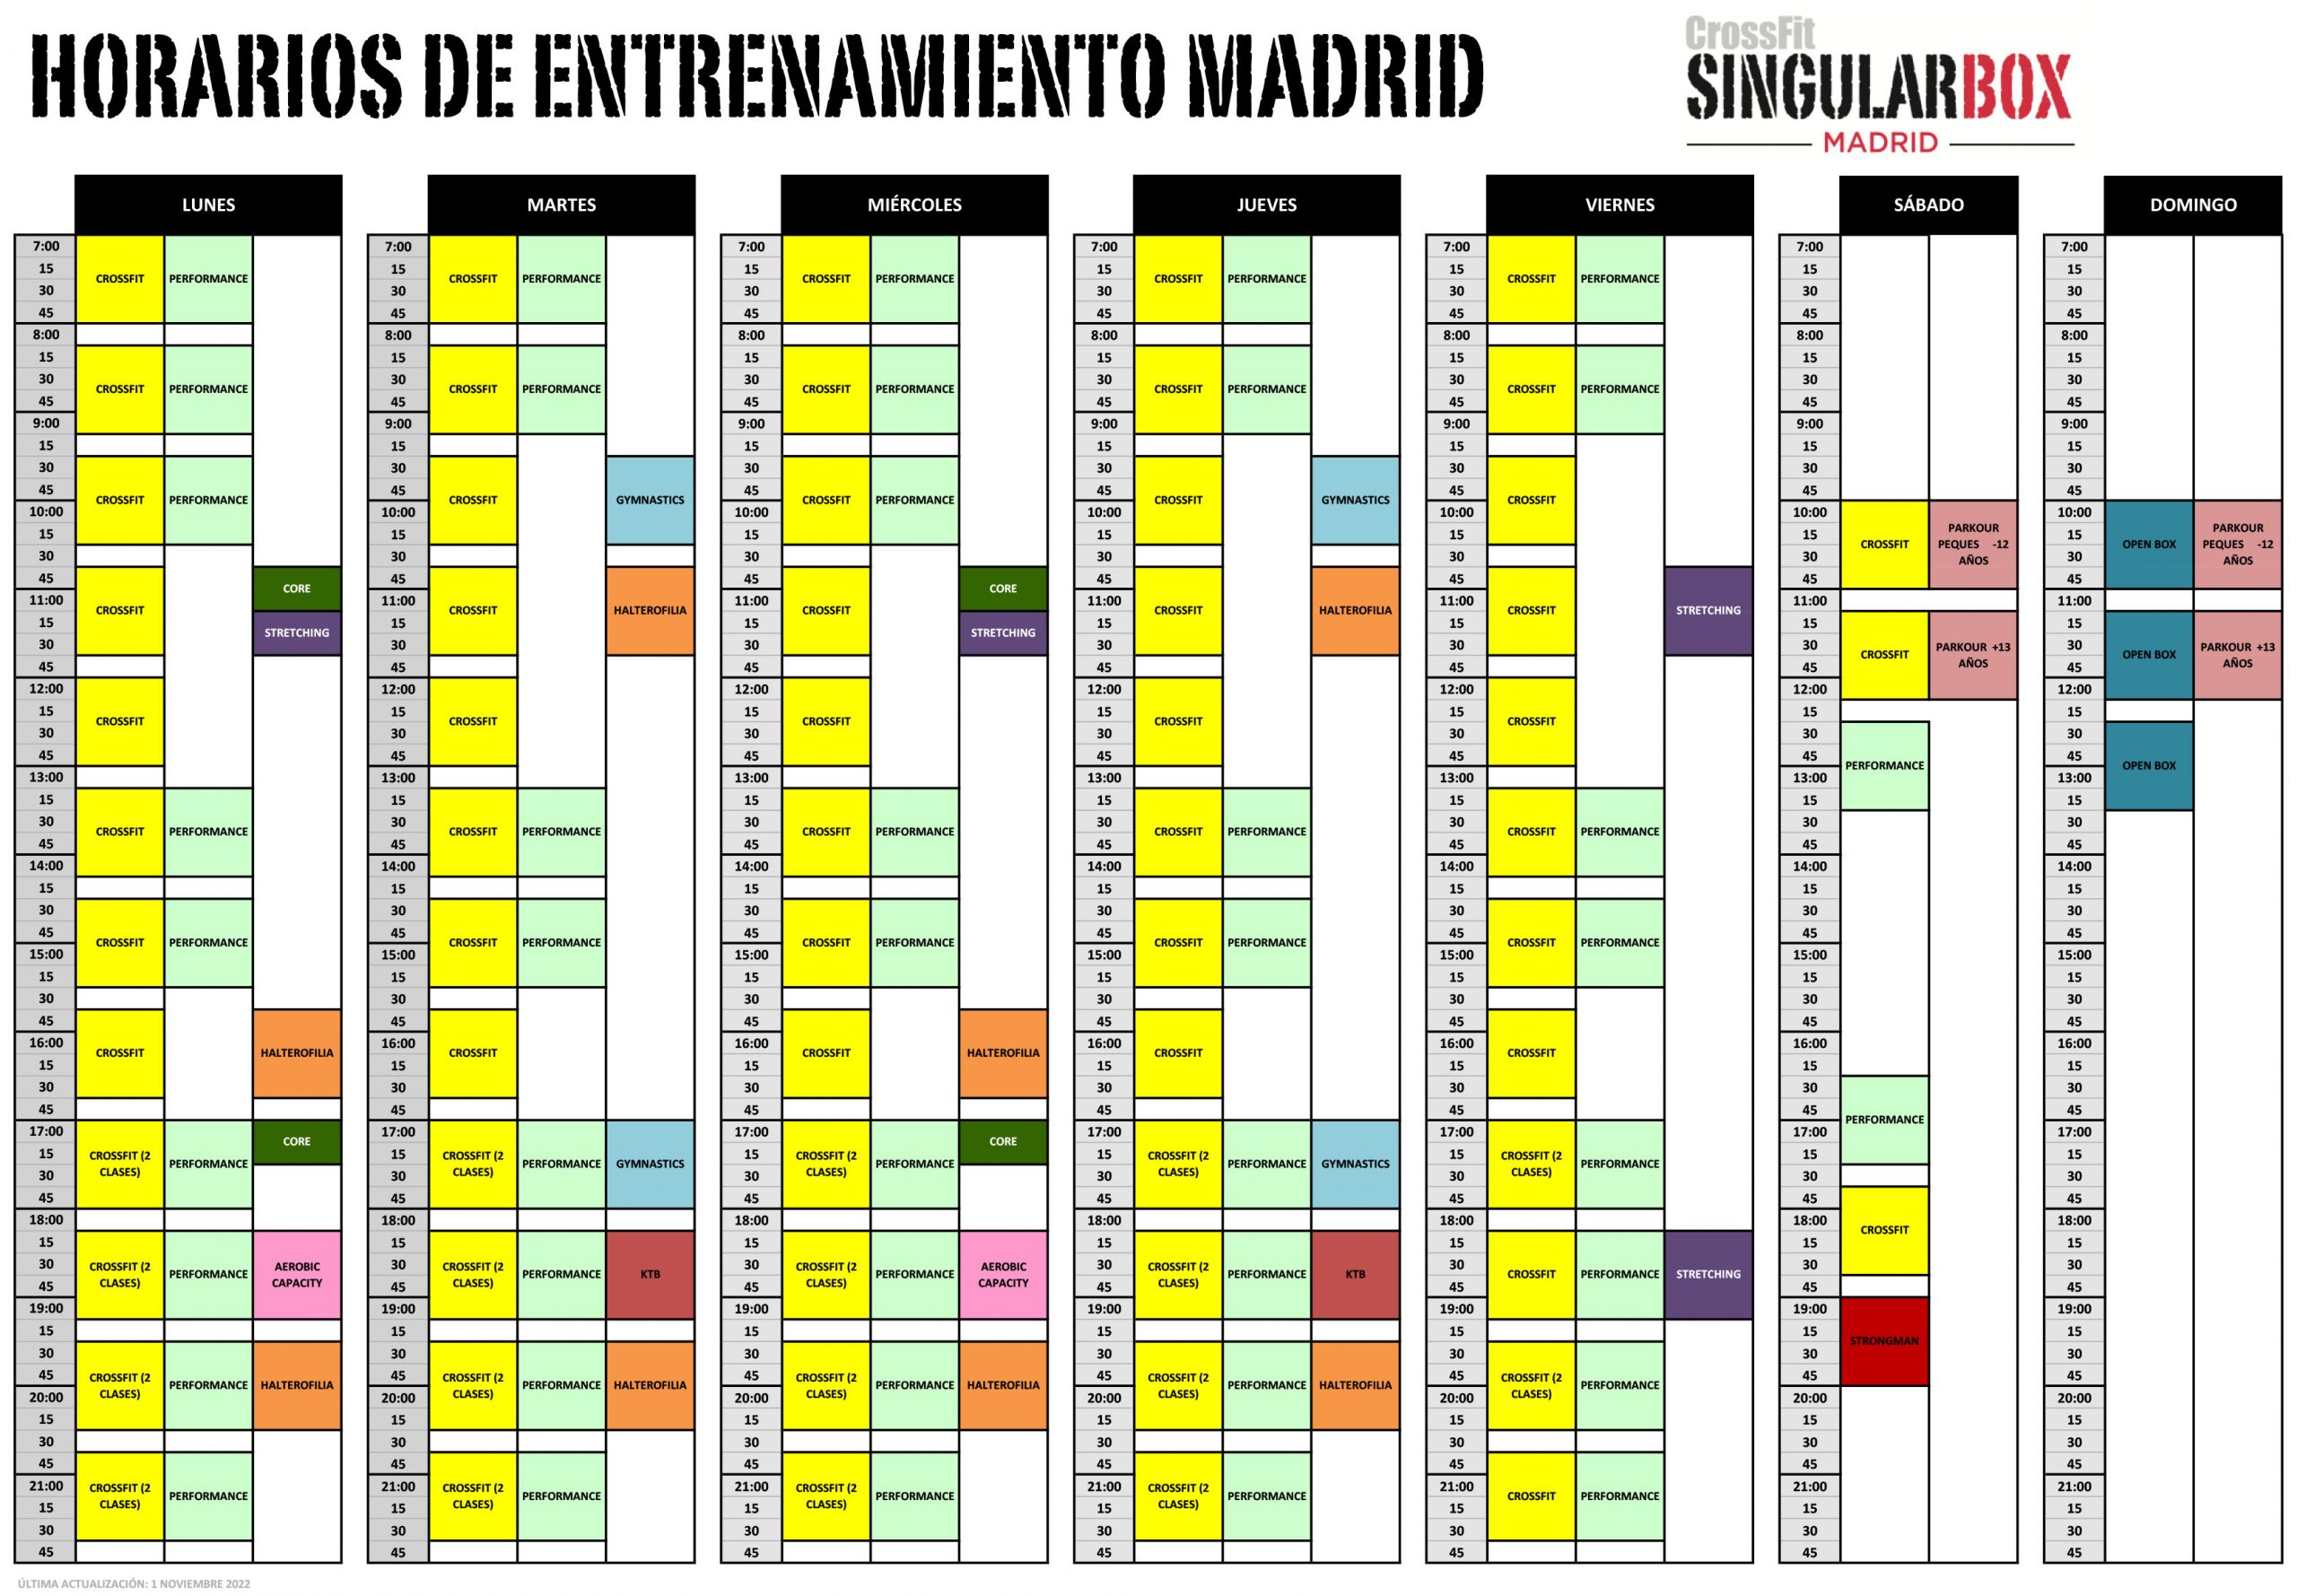 CrossFit Singular - Variedad, Intensidad, Comunidad... CrossFit en Madrid estado puro.